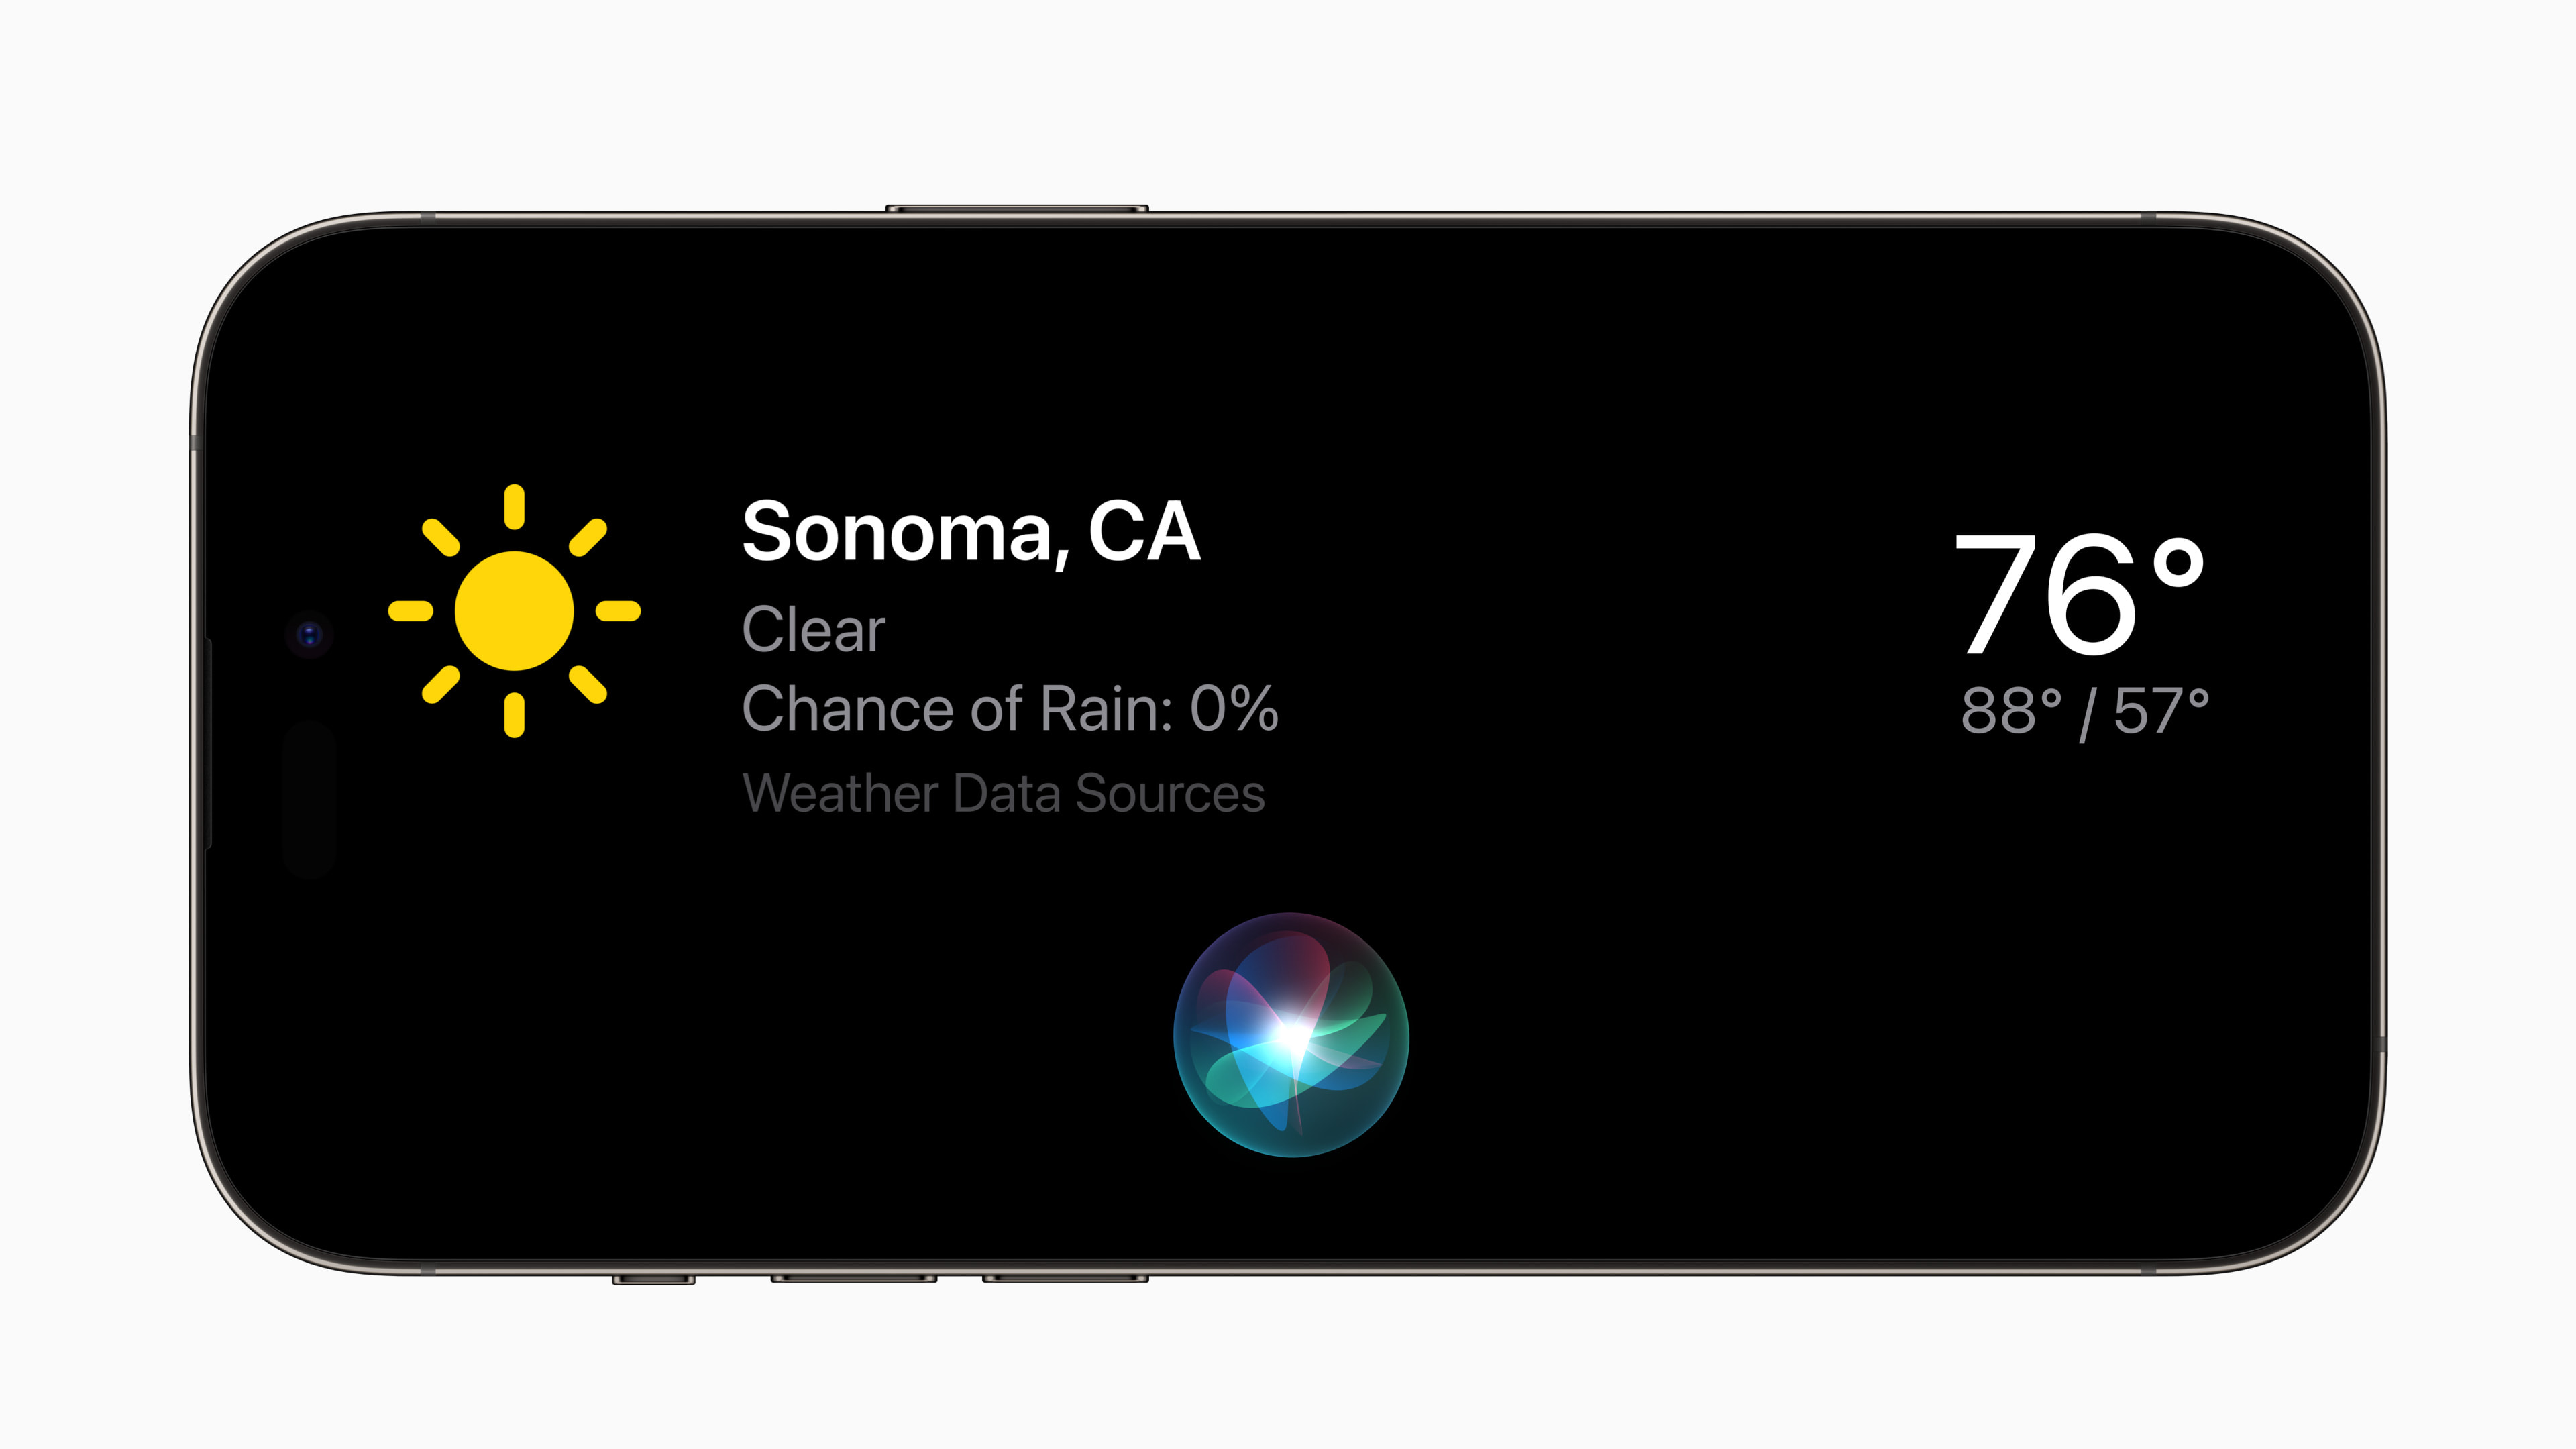 Novo aplicativo da Sogipa para Android já está à disposição. Versão para  iOS só aguarda homologação pela Apple, Notícias